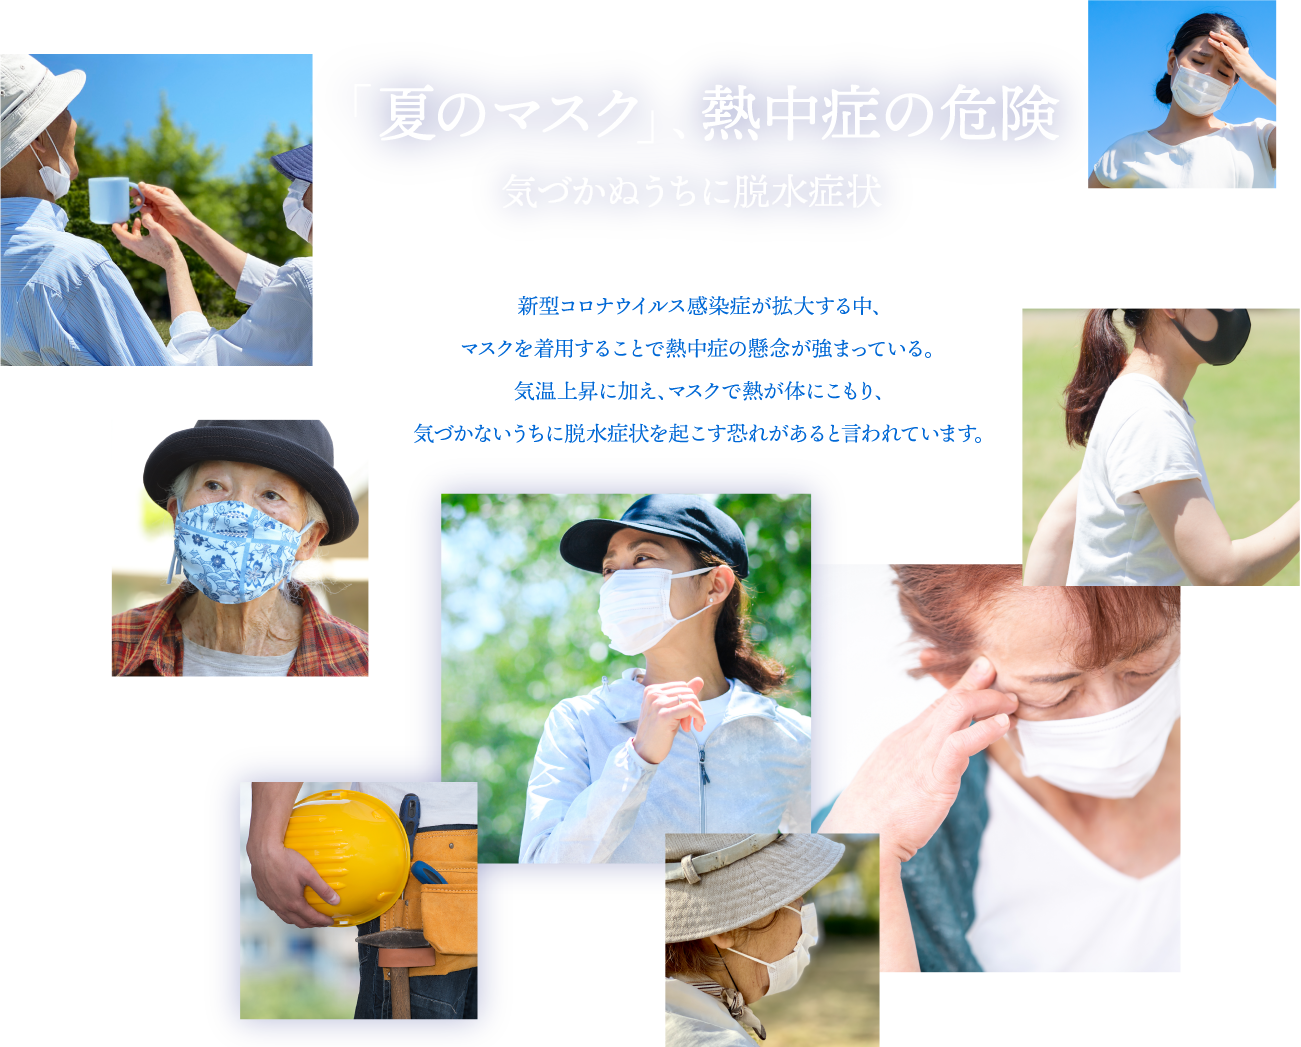 「夏のマスク」、熱中症の危険